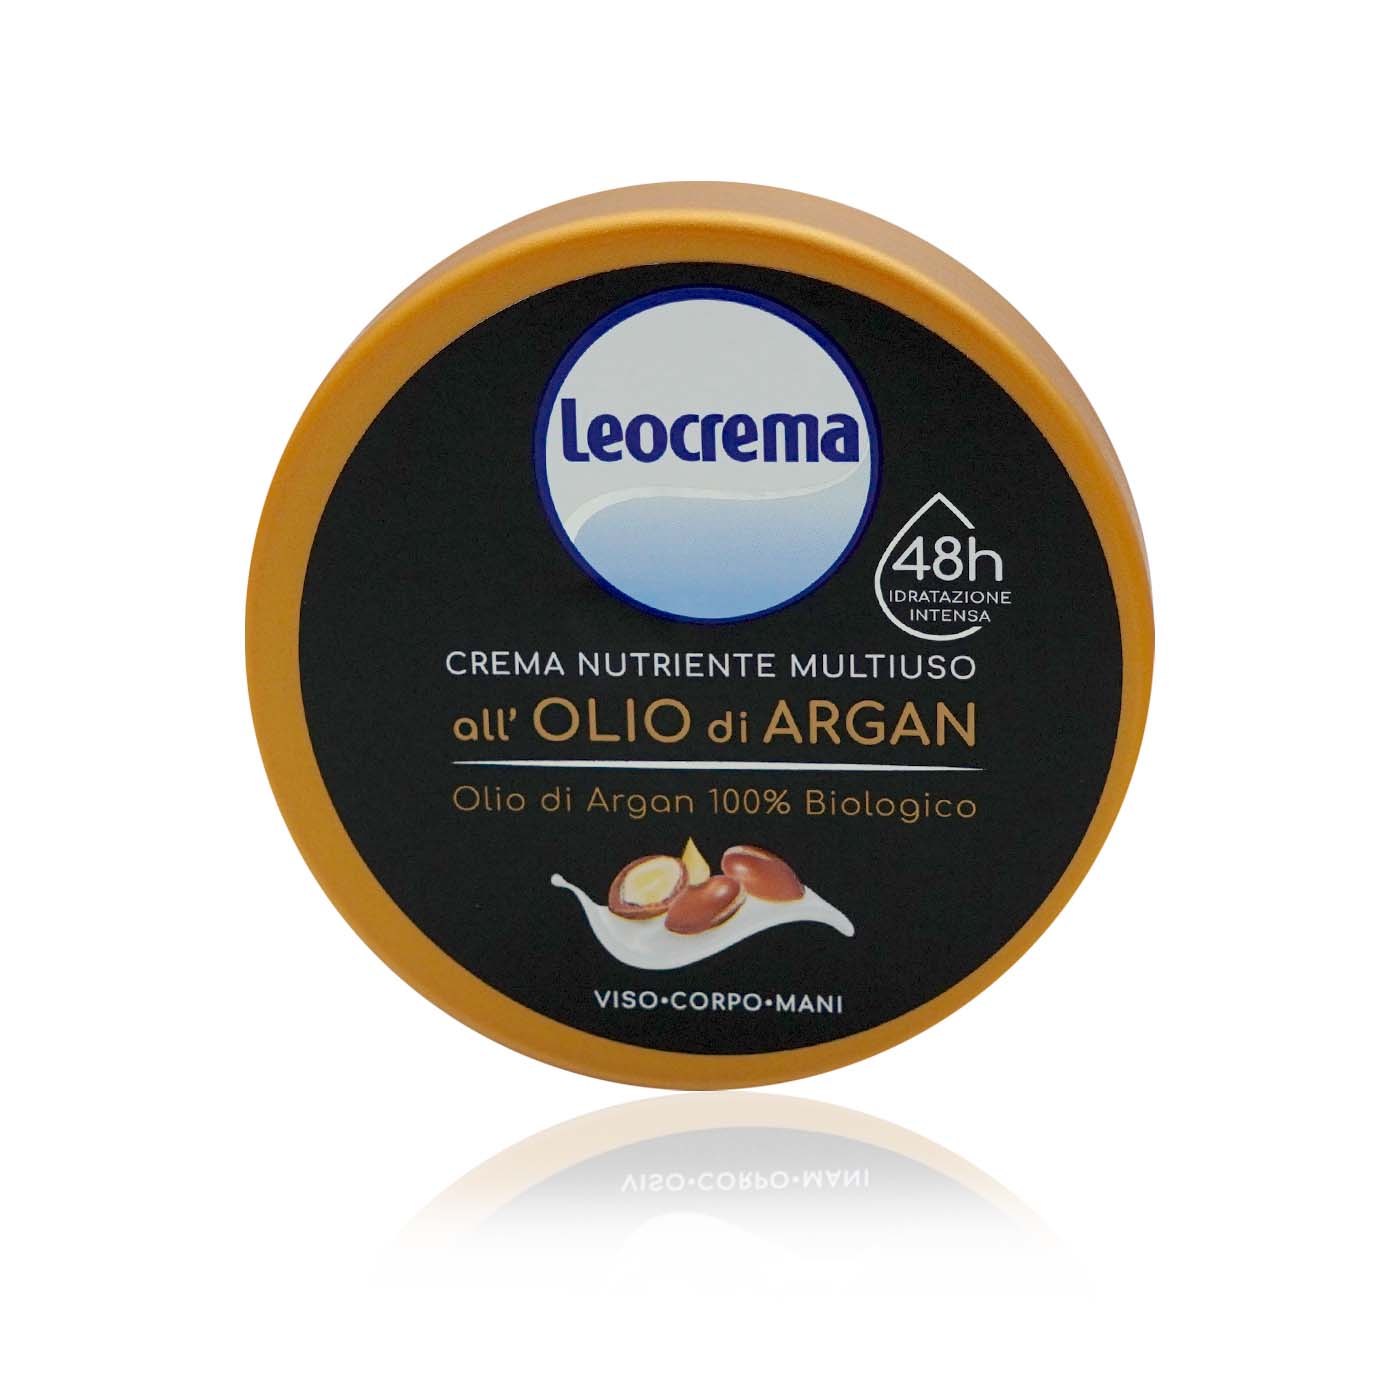 LEOCREMA crema multiuso olio di argan-Multicreme Arganöl - 0,15kg